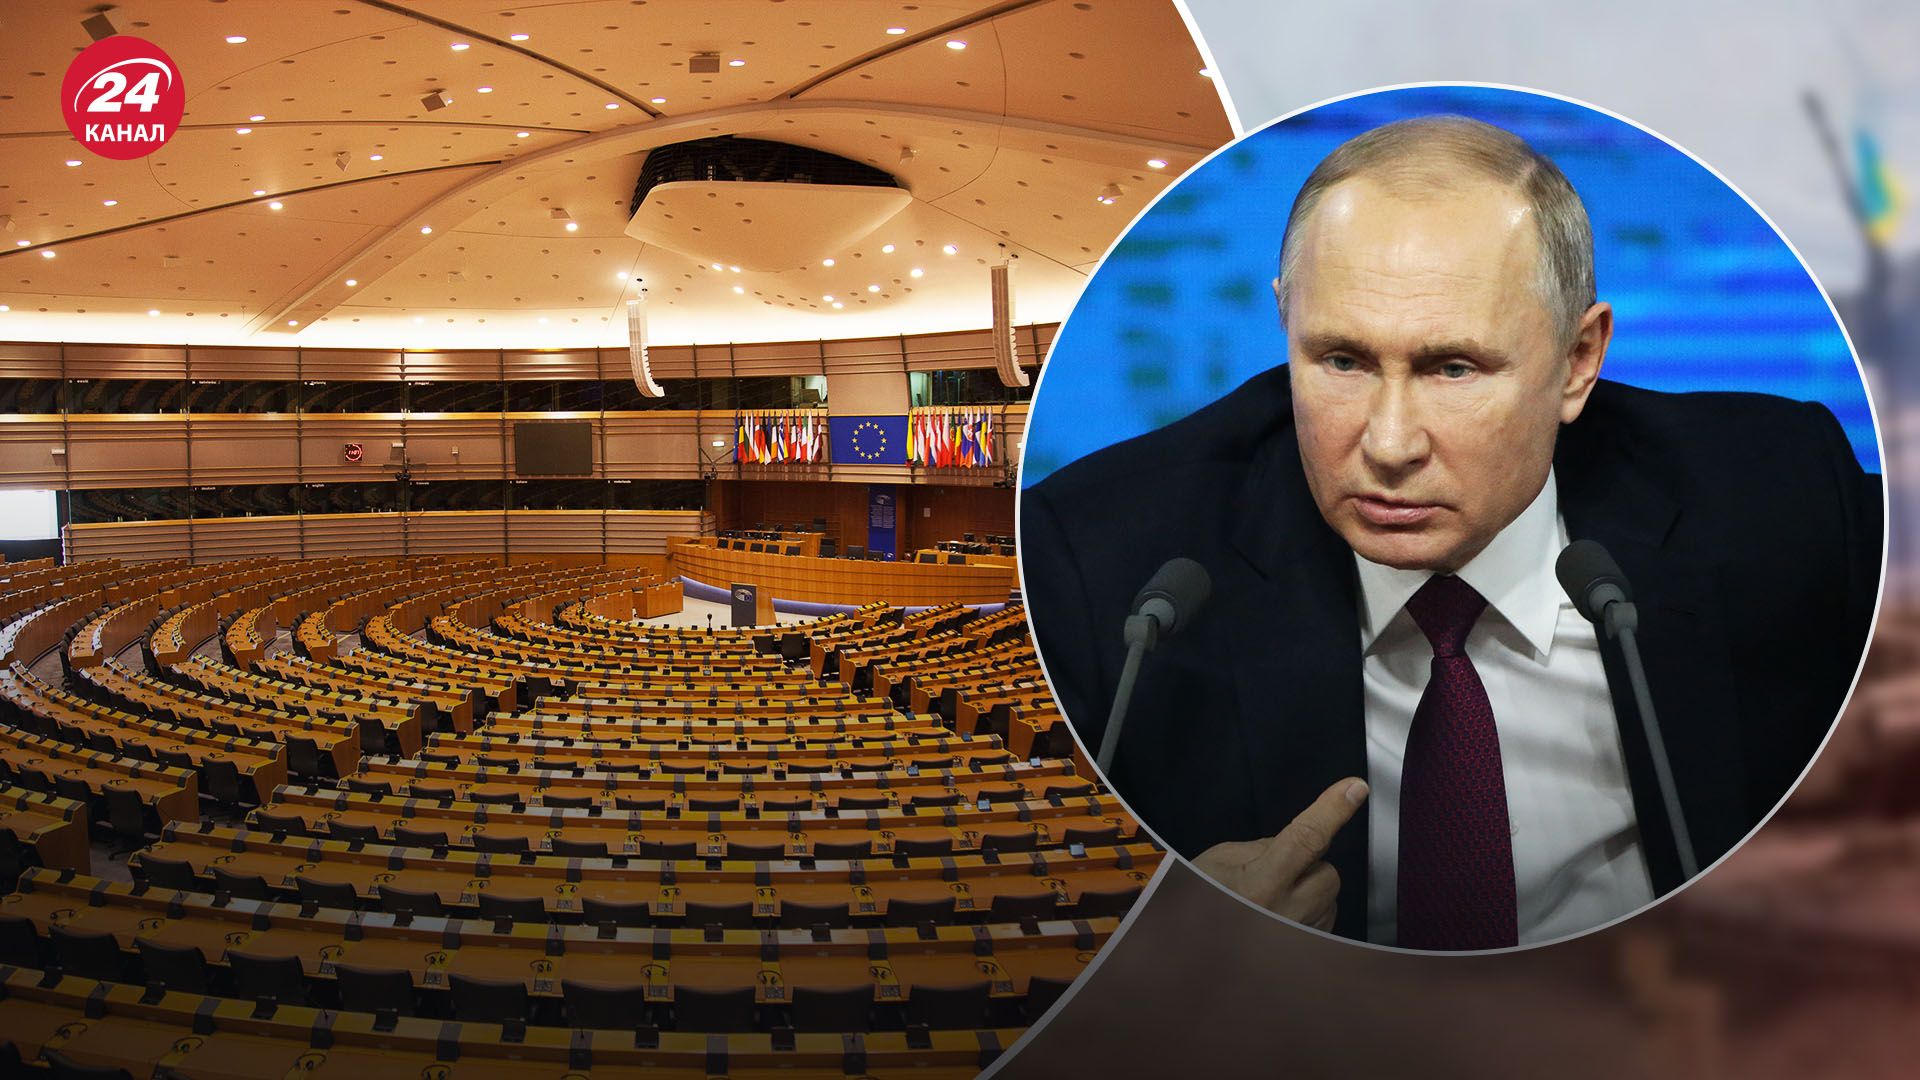 Европарламент отказался признавать Путина легитимным президентом России - 24 Канал